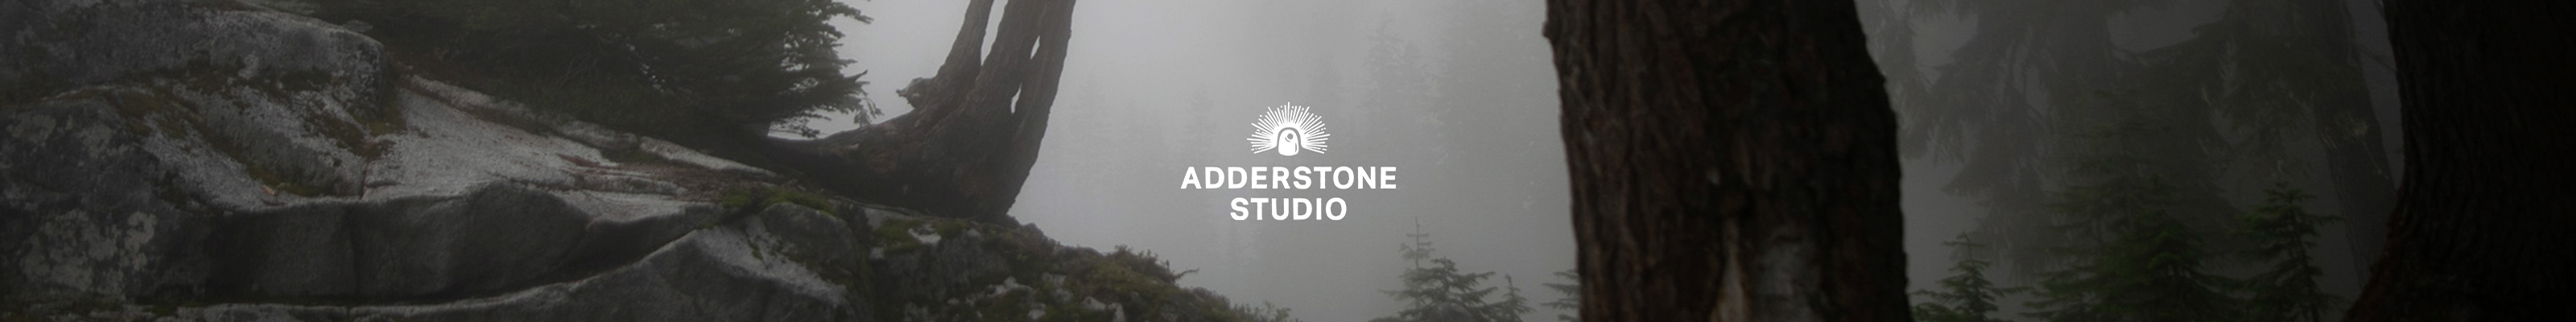 Adderstone Studio 的個人檔案橫幅